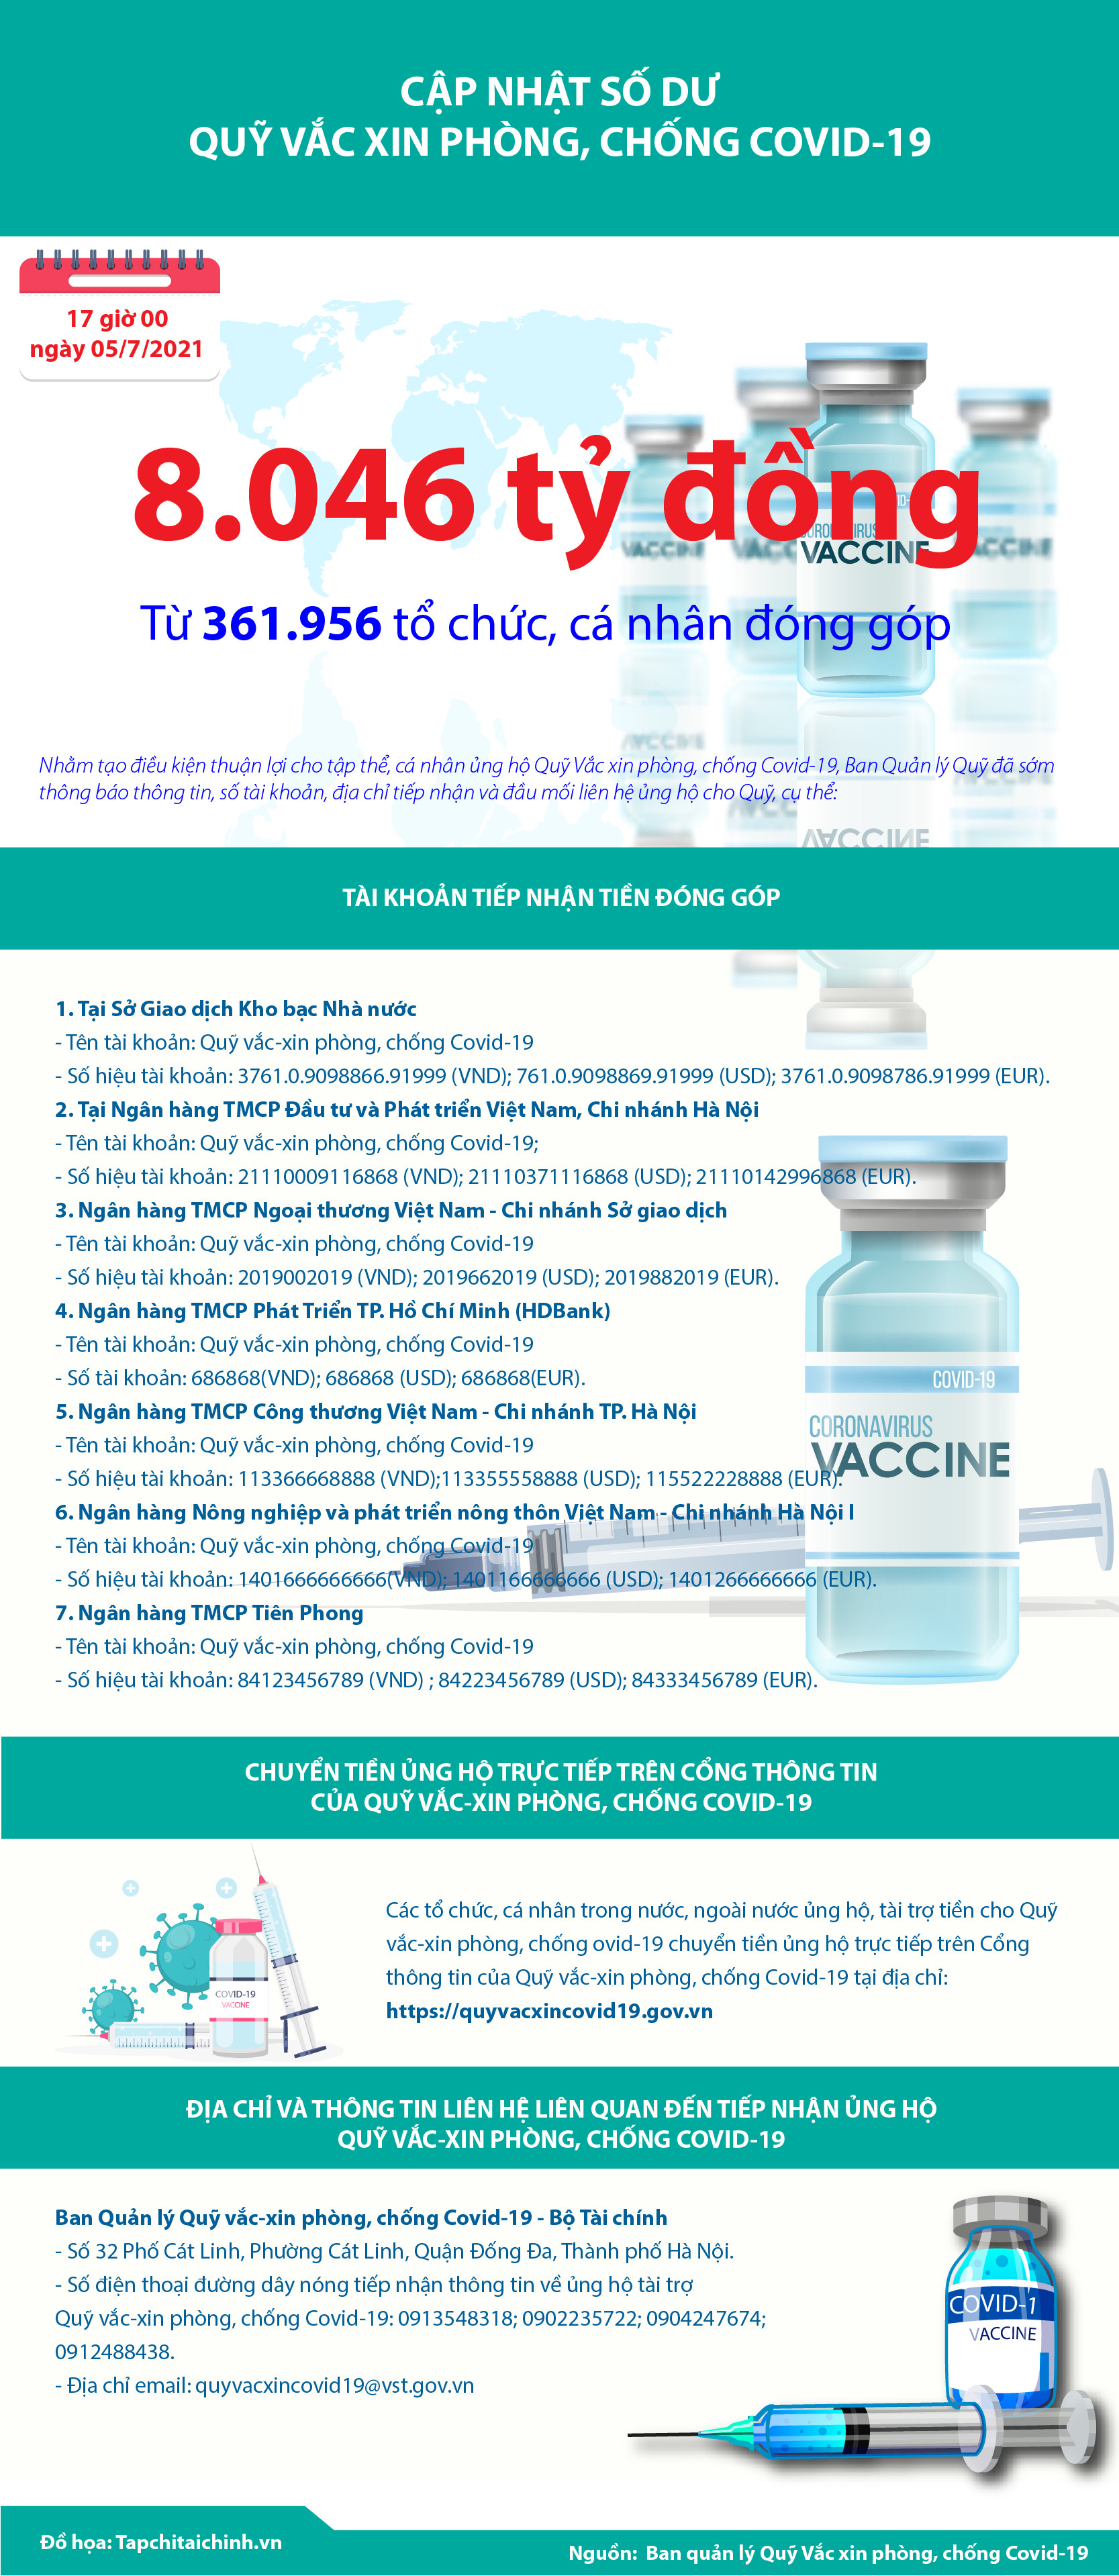 Quỹ Vắc xin phòng, chống Covid-19 đã tiếp nhận ủng hộ 8.046 tỷ đồng - Ảnh 1